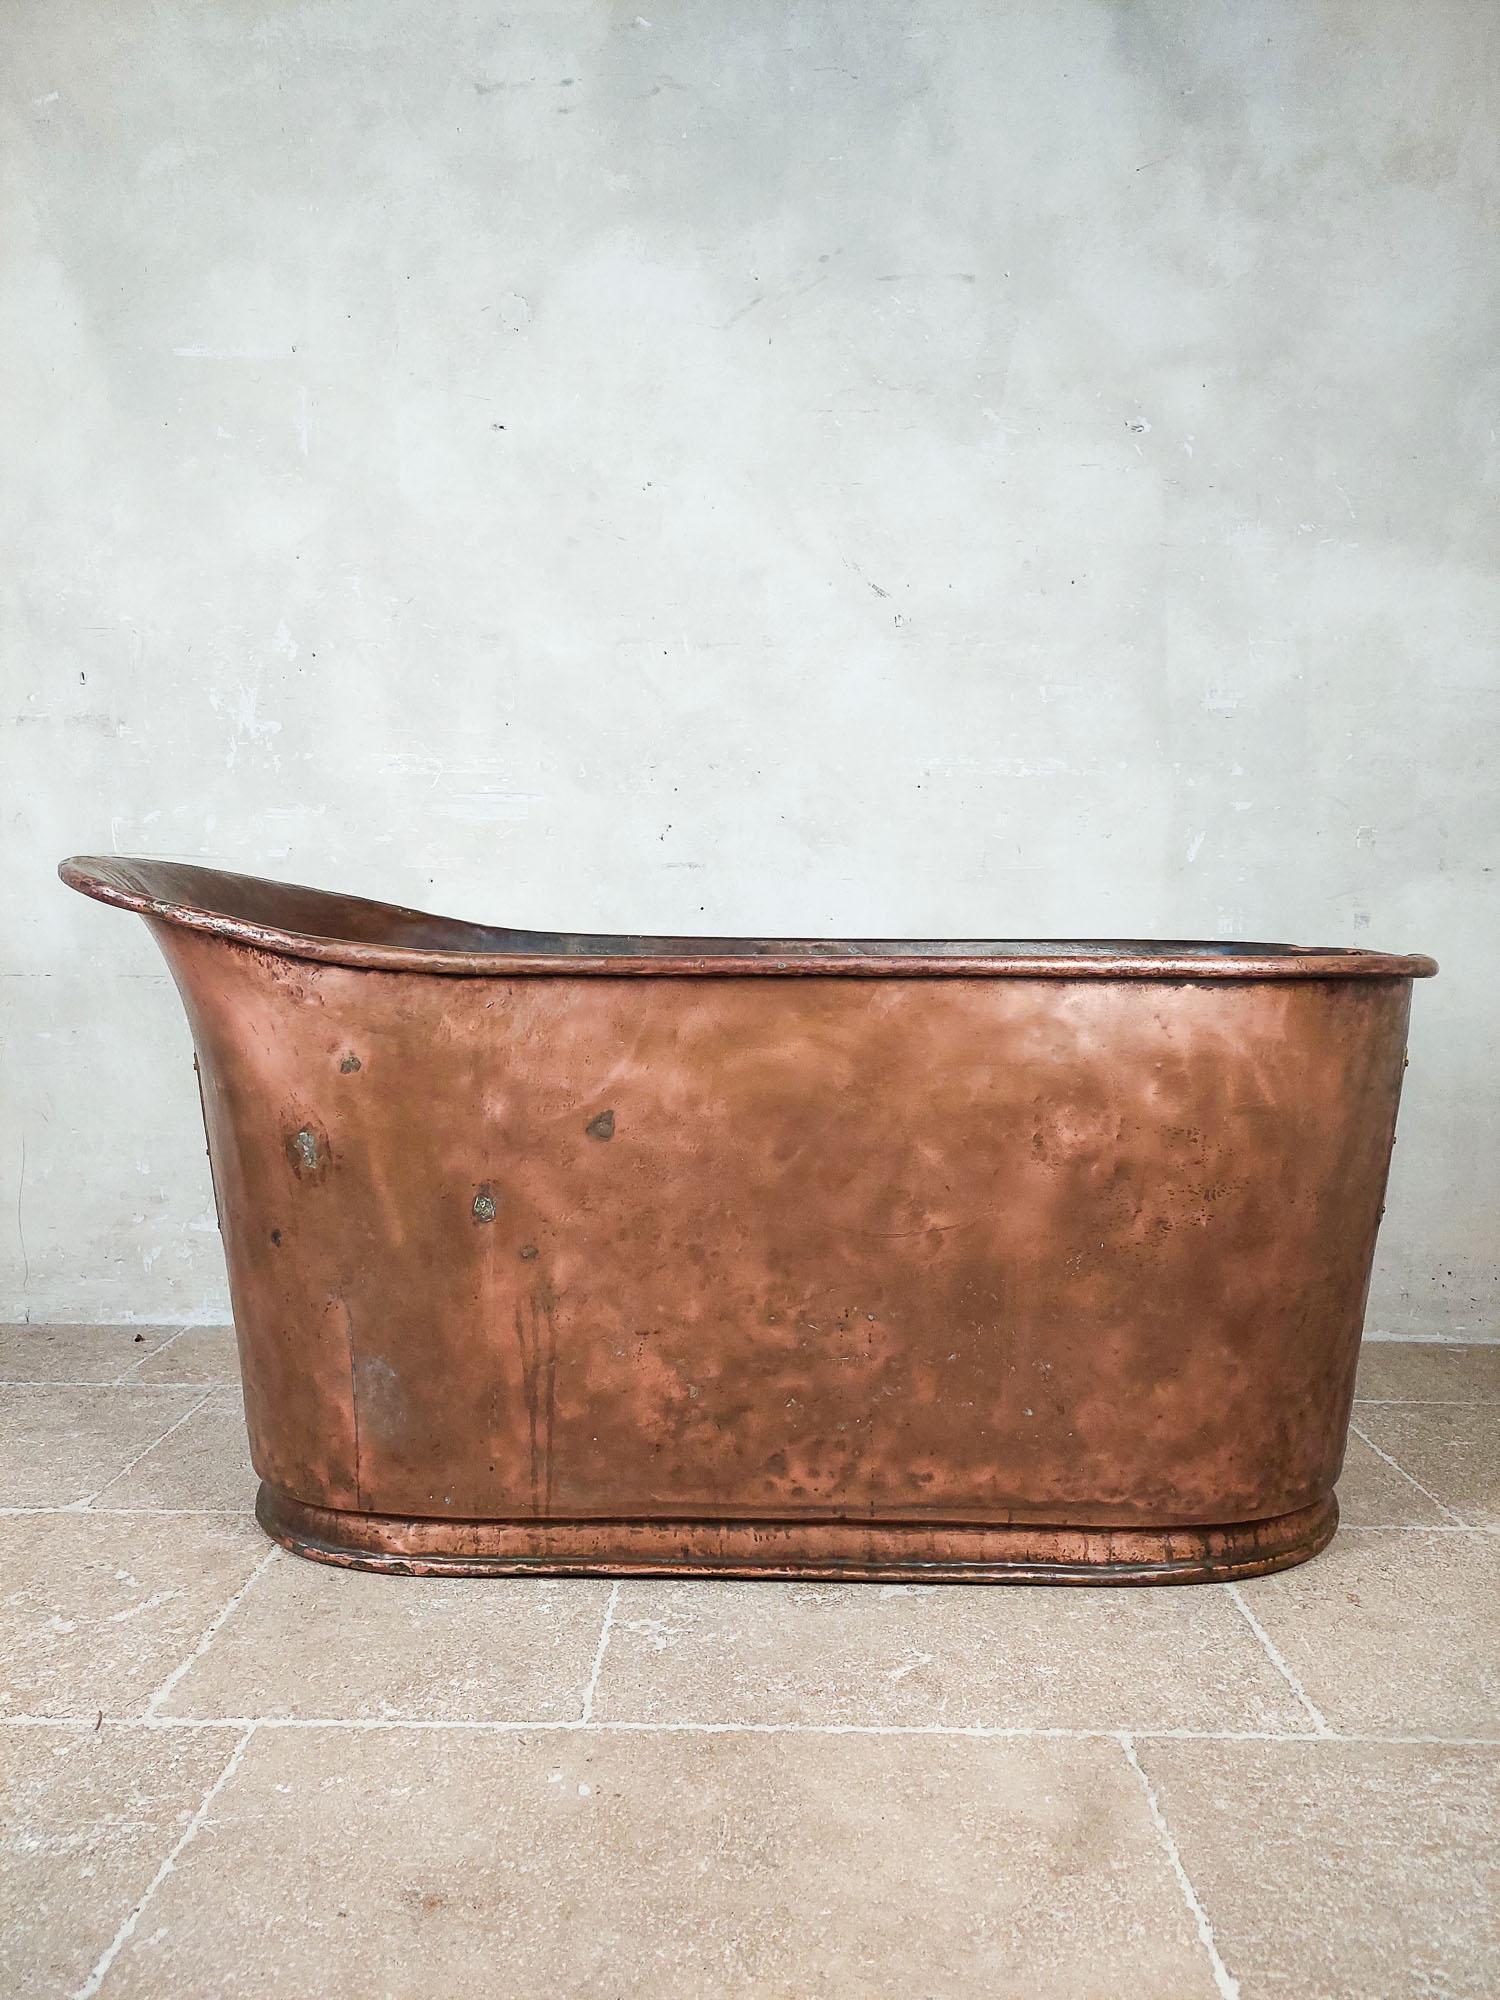 Belle baignoire en cuivre du début du 19e siècle (vers 1800). Fabriqué en France dans le style Empire. Il s'agit d'une baignoire asymétrique que l'on utilise en position assise, ce qui explique la hauteur de cette baignoire.

longueur 149 cm x